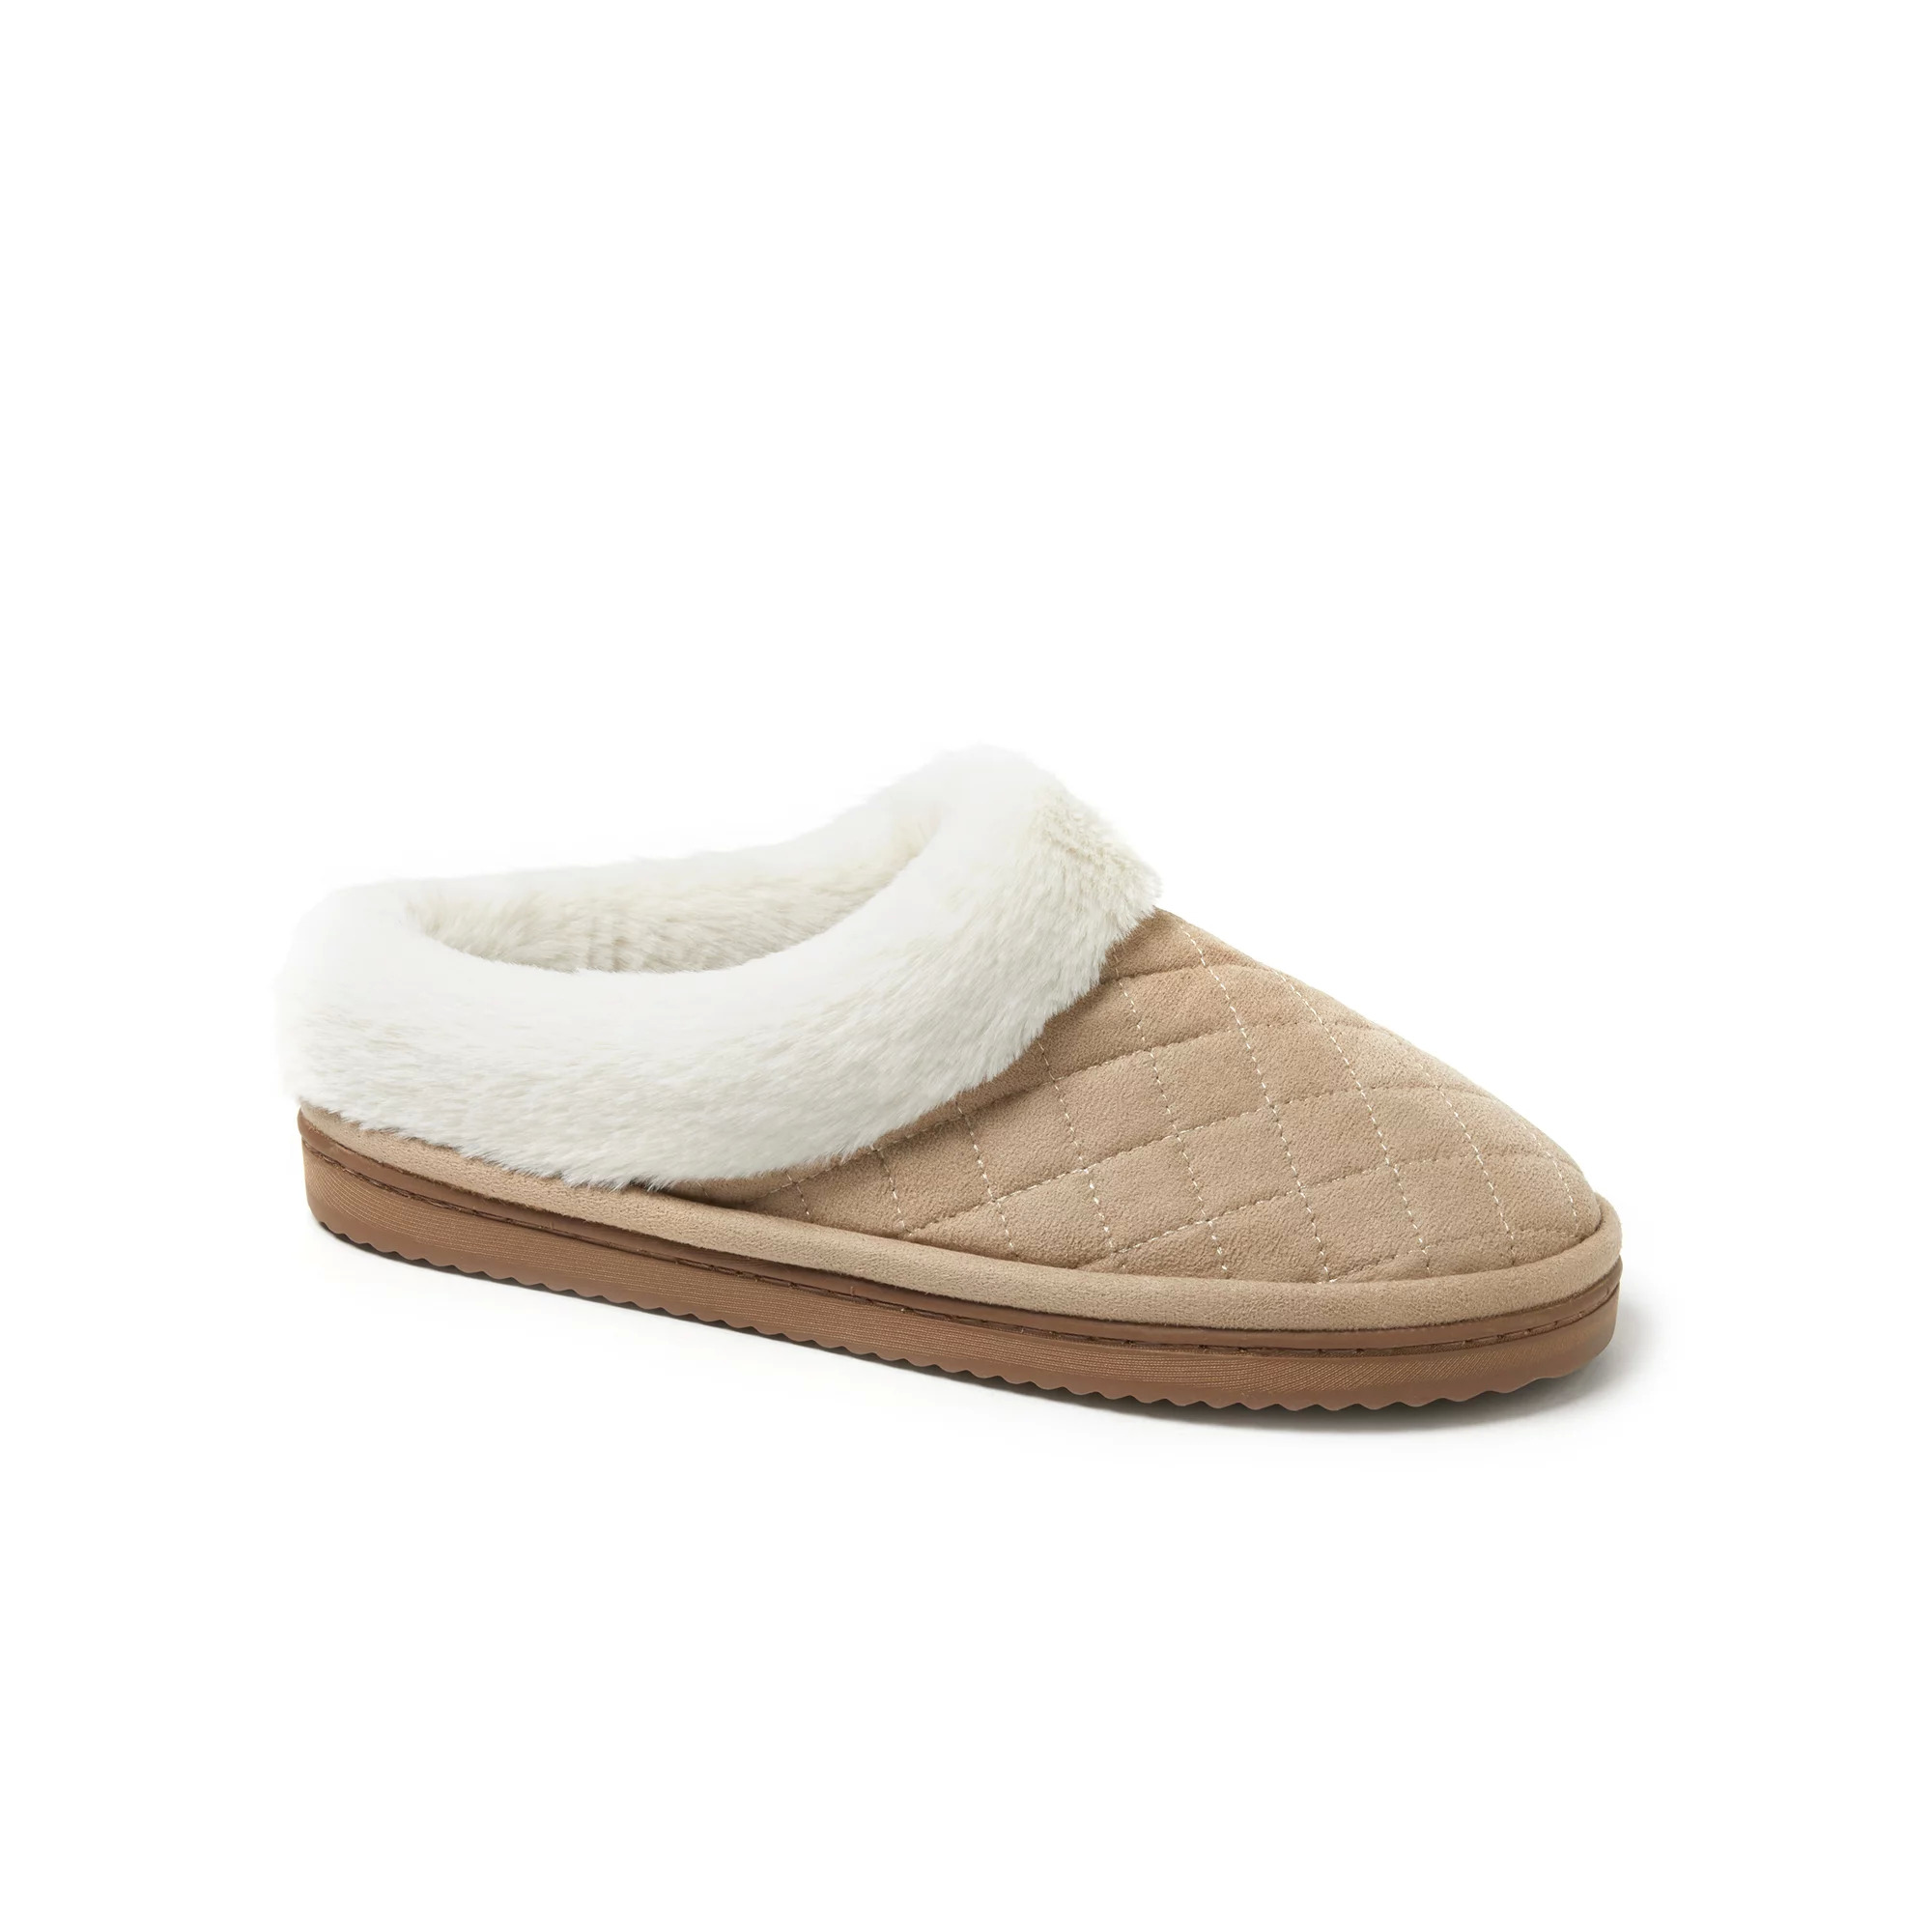 Dearfoams Women's Indoor/ Outdoor Cozy Comfort Quilted Clog Slippers ...